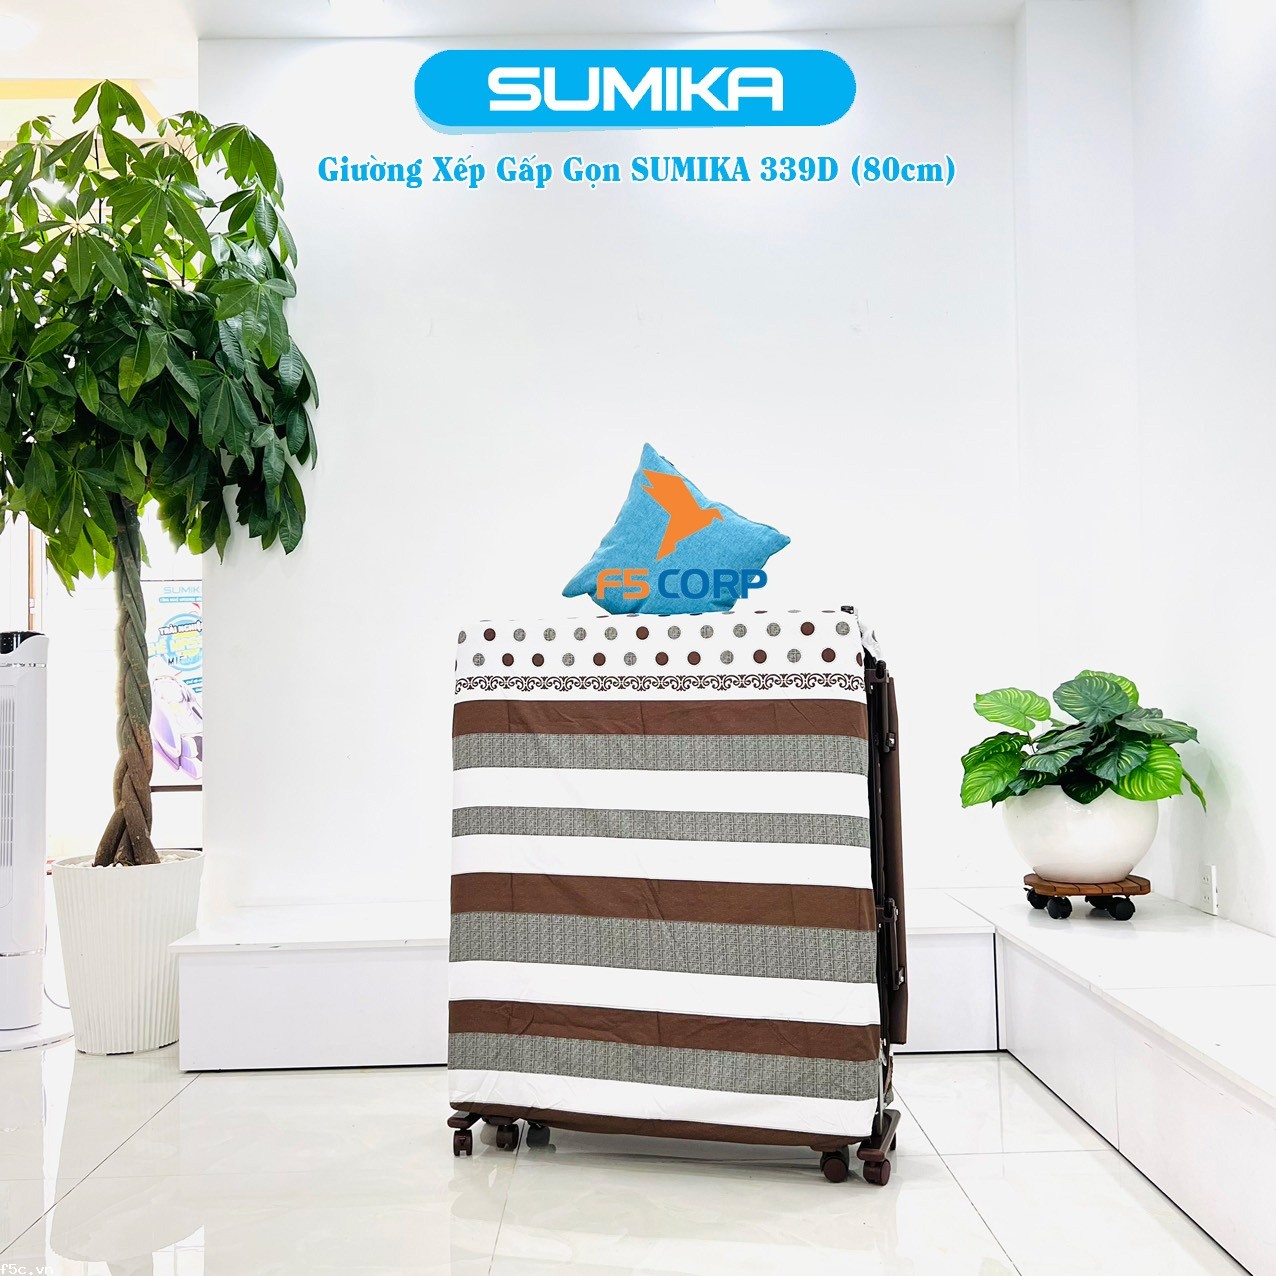 Giường nệm xếp gọn đa năng kiểu dáng Hàn Quốc SUMIKA 339D, rộng 80cm